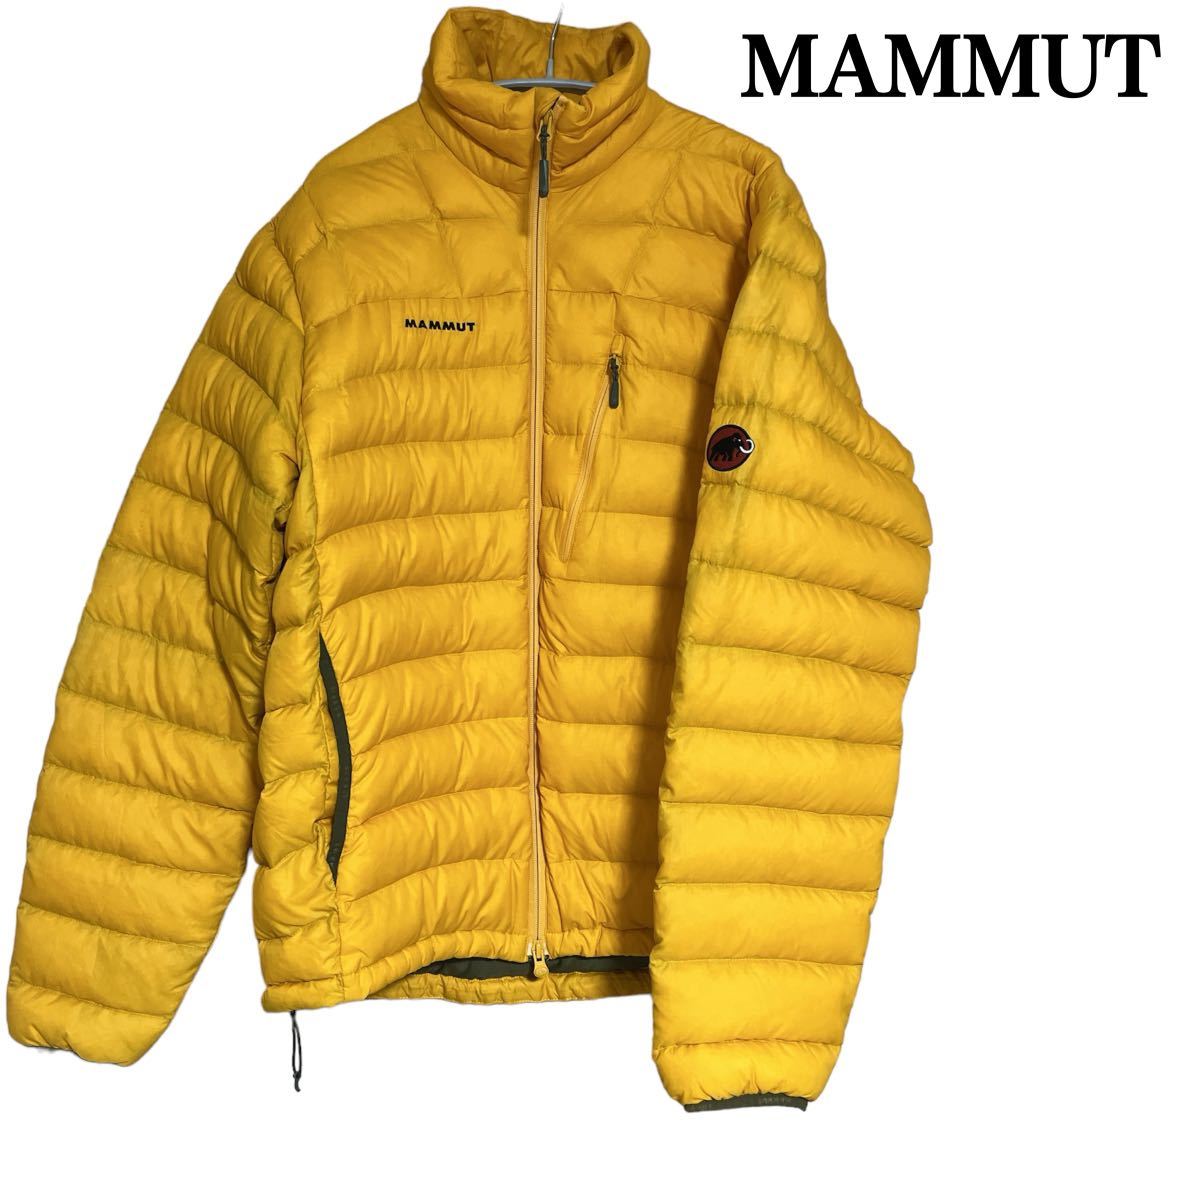 状態良 MAMMUT Broad Peak Ⅱ Jacket マムート ライトダウン ジャケット 750フィルパワー PERTEX メンズ オレンジ 登山 アウトドア